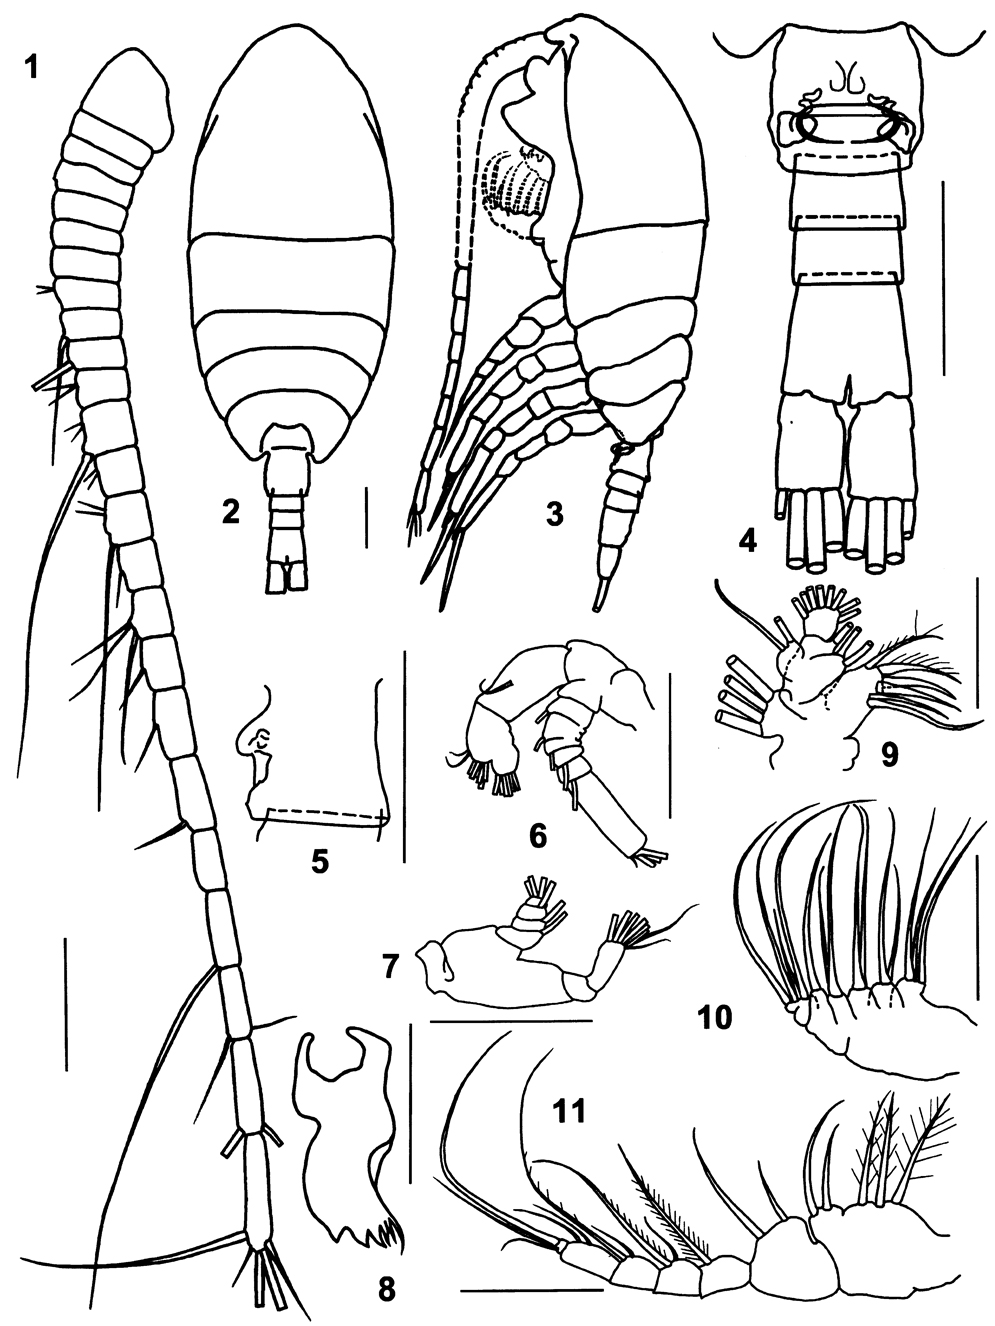 Espce Pertsovius tridentatus - Planche 1 de figures morphologiques